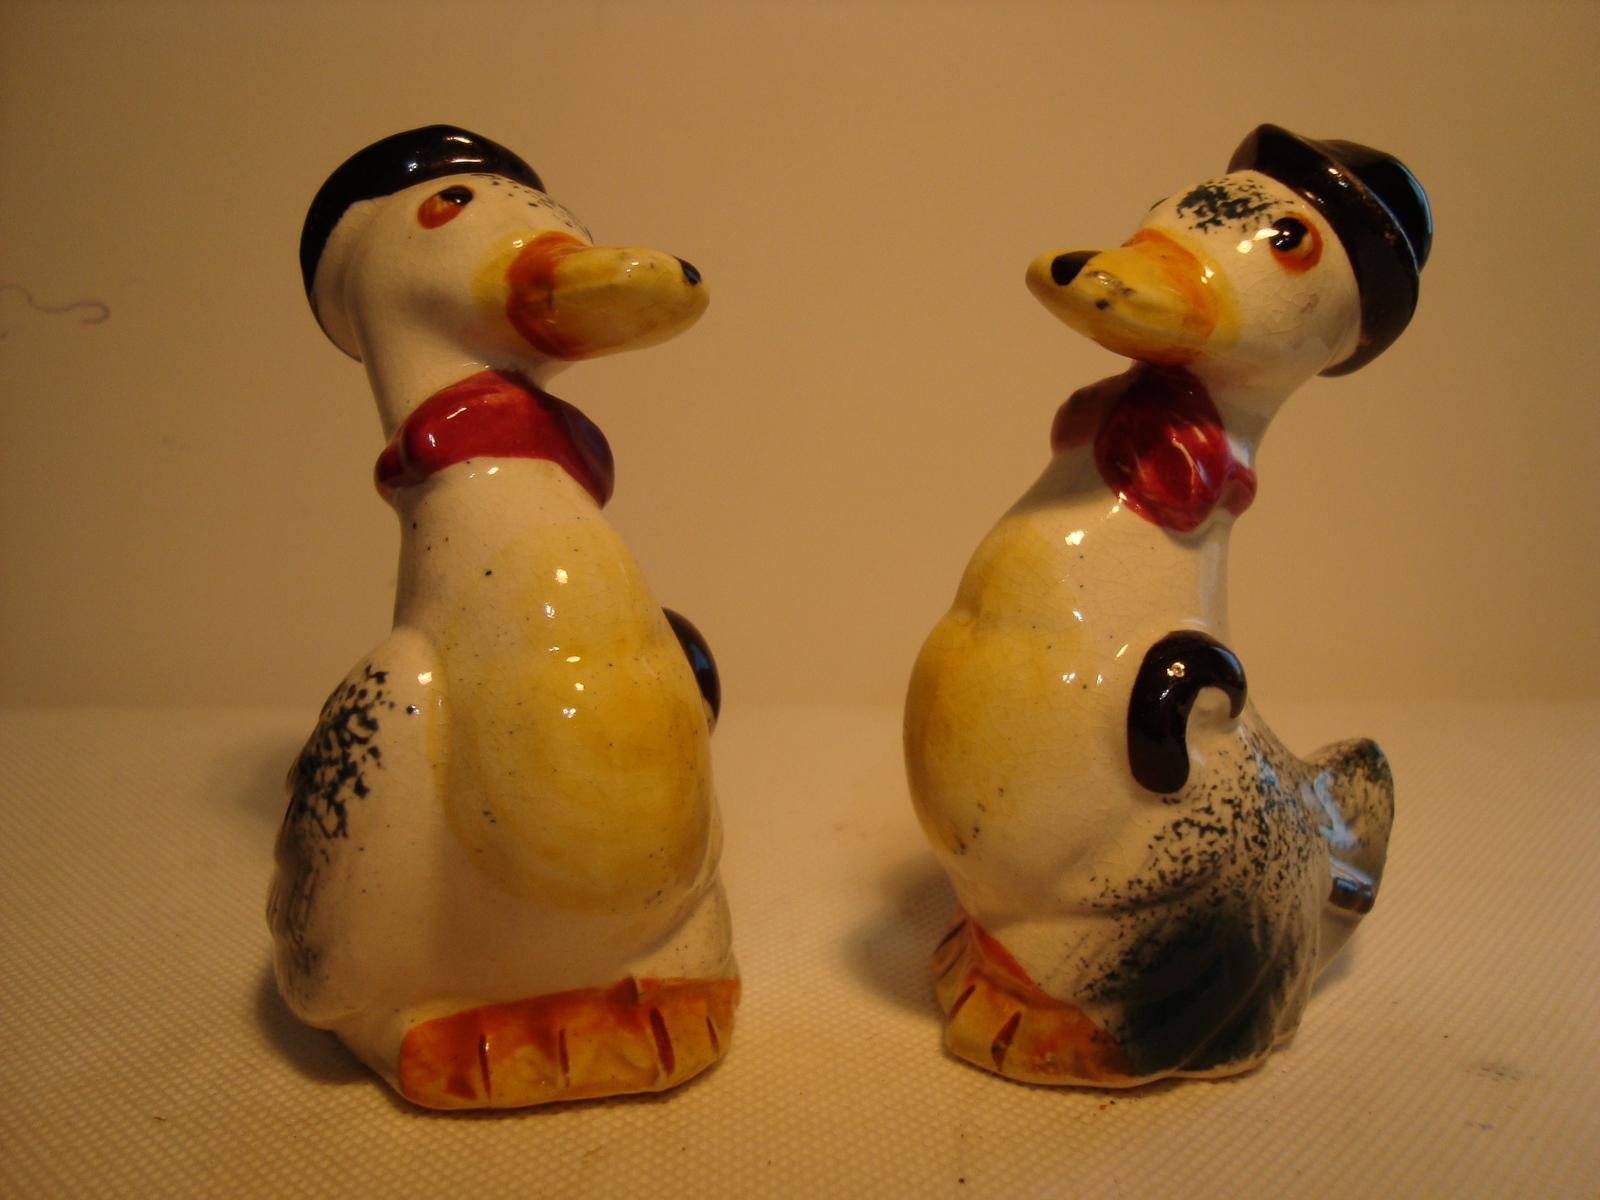 Primary image for Vintage, Japan hand painted porcelain duck shape salt & pepper shaker set.